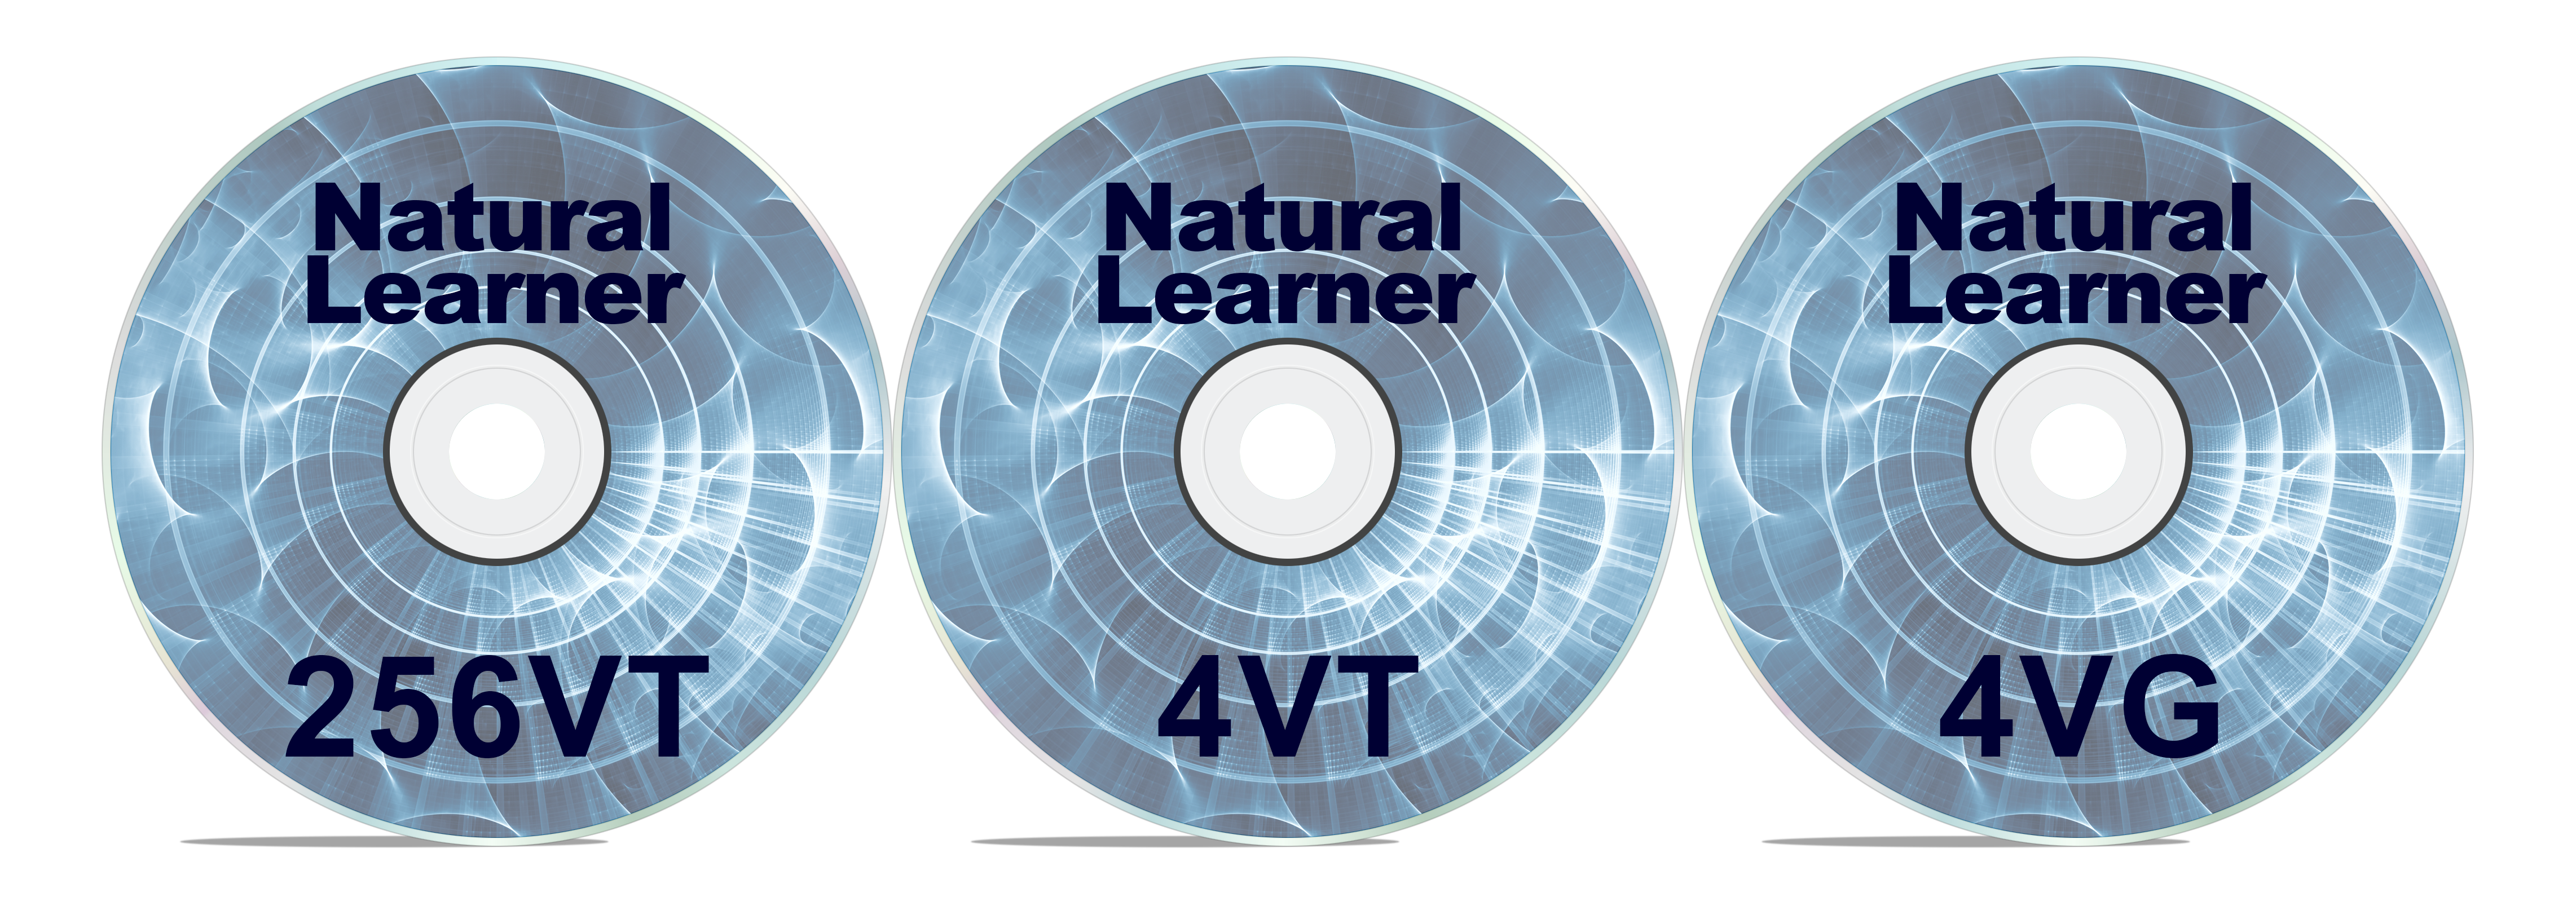 Natural Learner